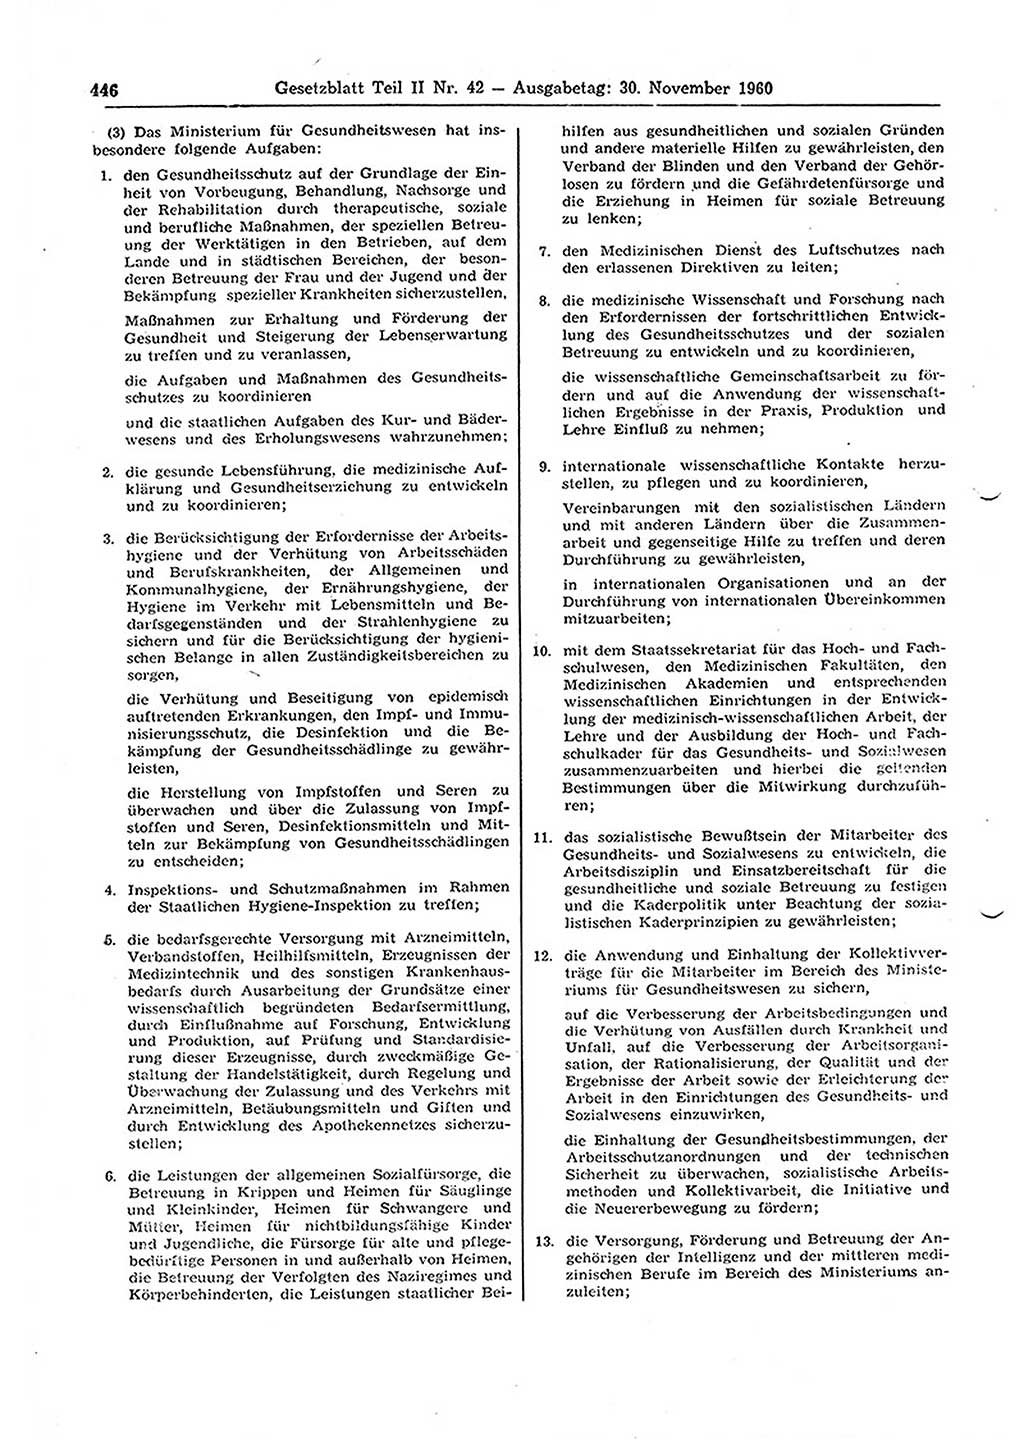 Gesetzblatt (GBl.) der Deutschen Demokratischen Republik (DDR) Teil ⅠⅠ 1960, Seite 446 (GBl. DDR ⅠⅠ 1960, S. 446)